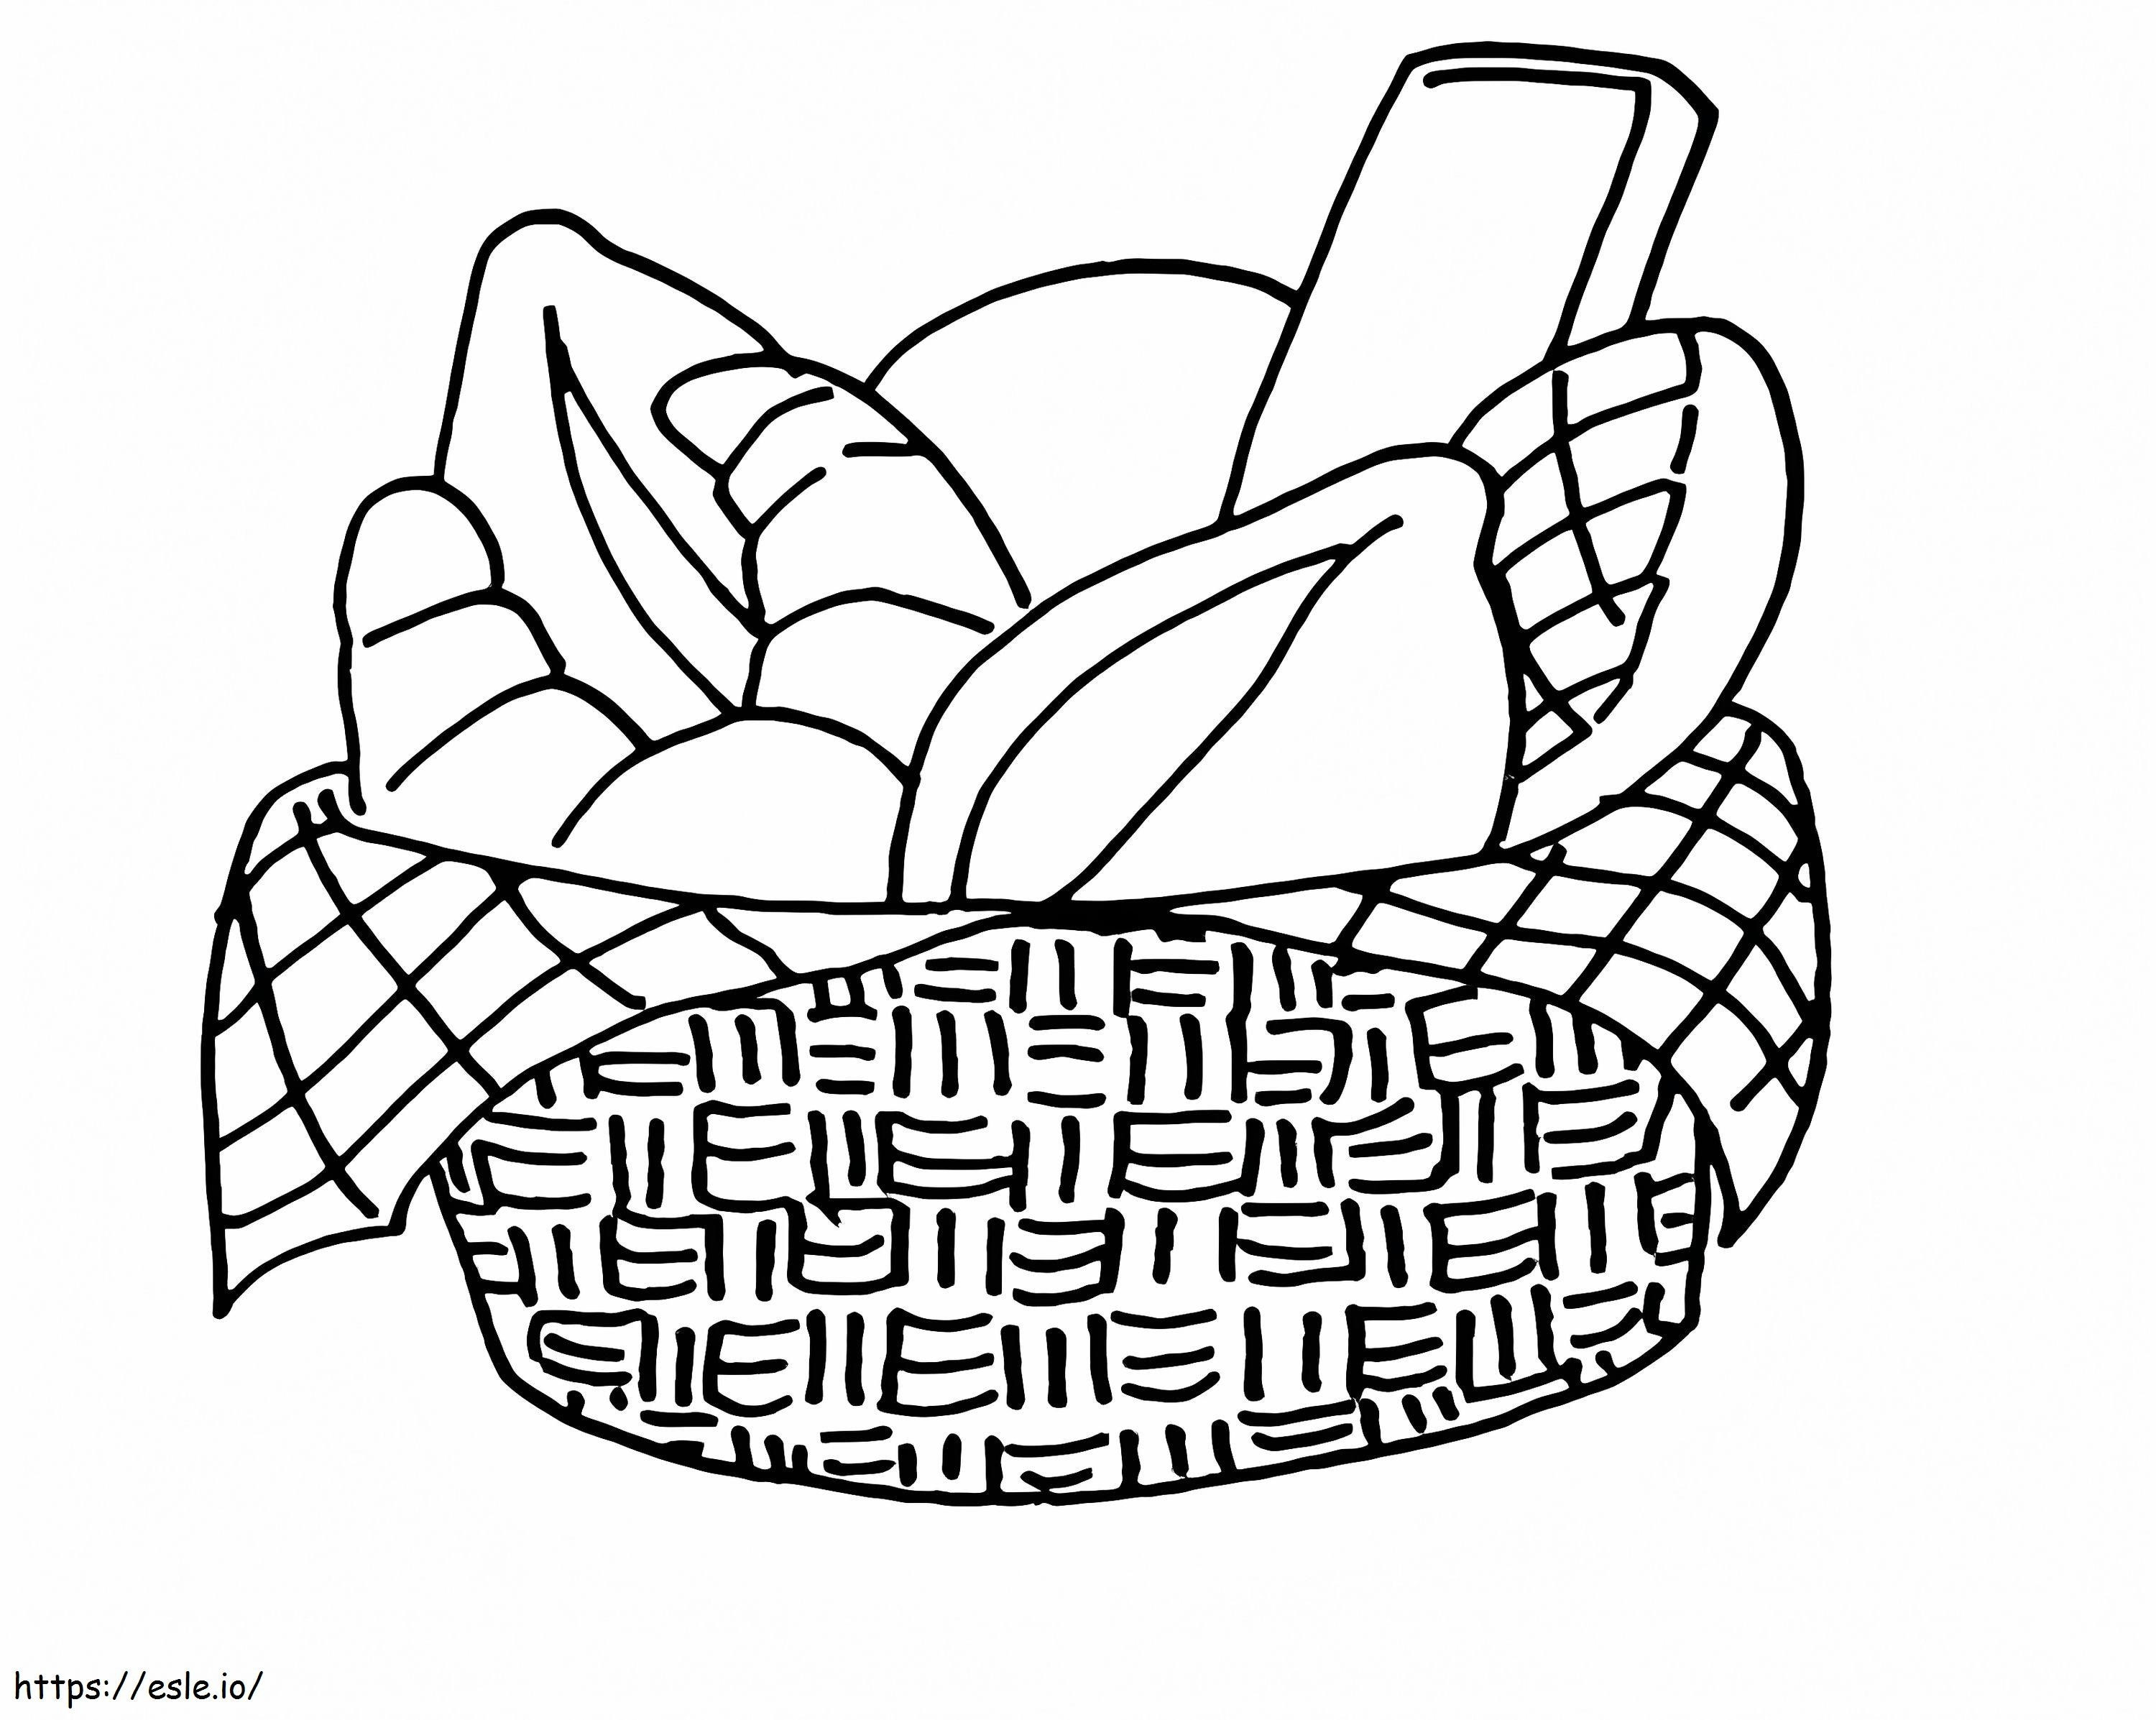 Bread Basket coloring page